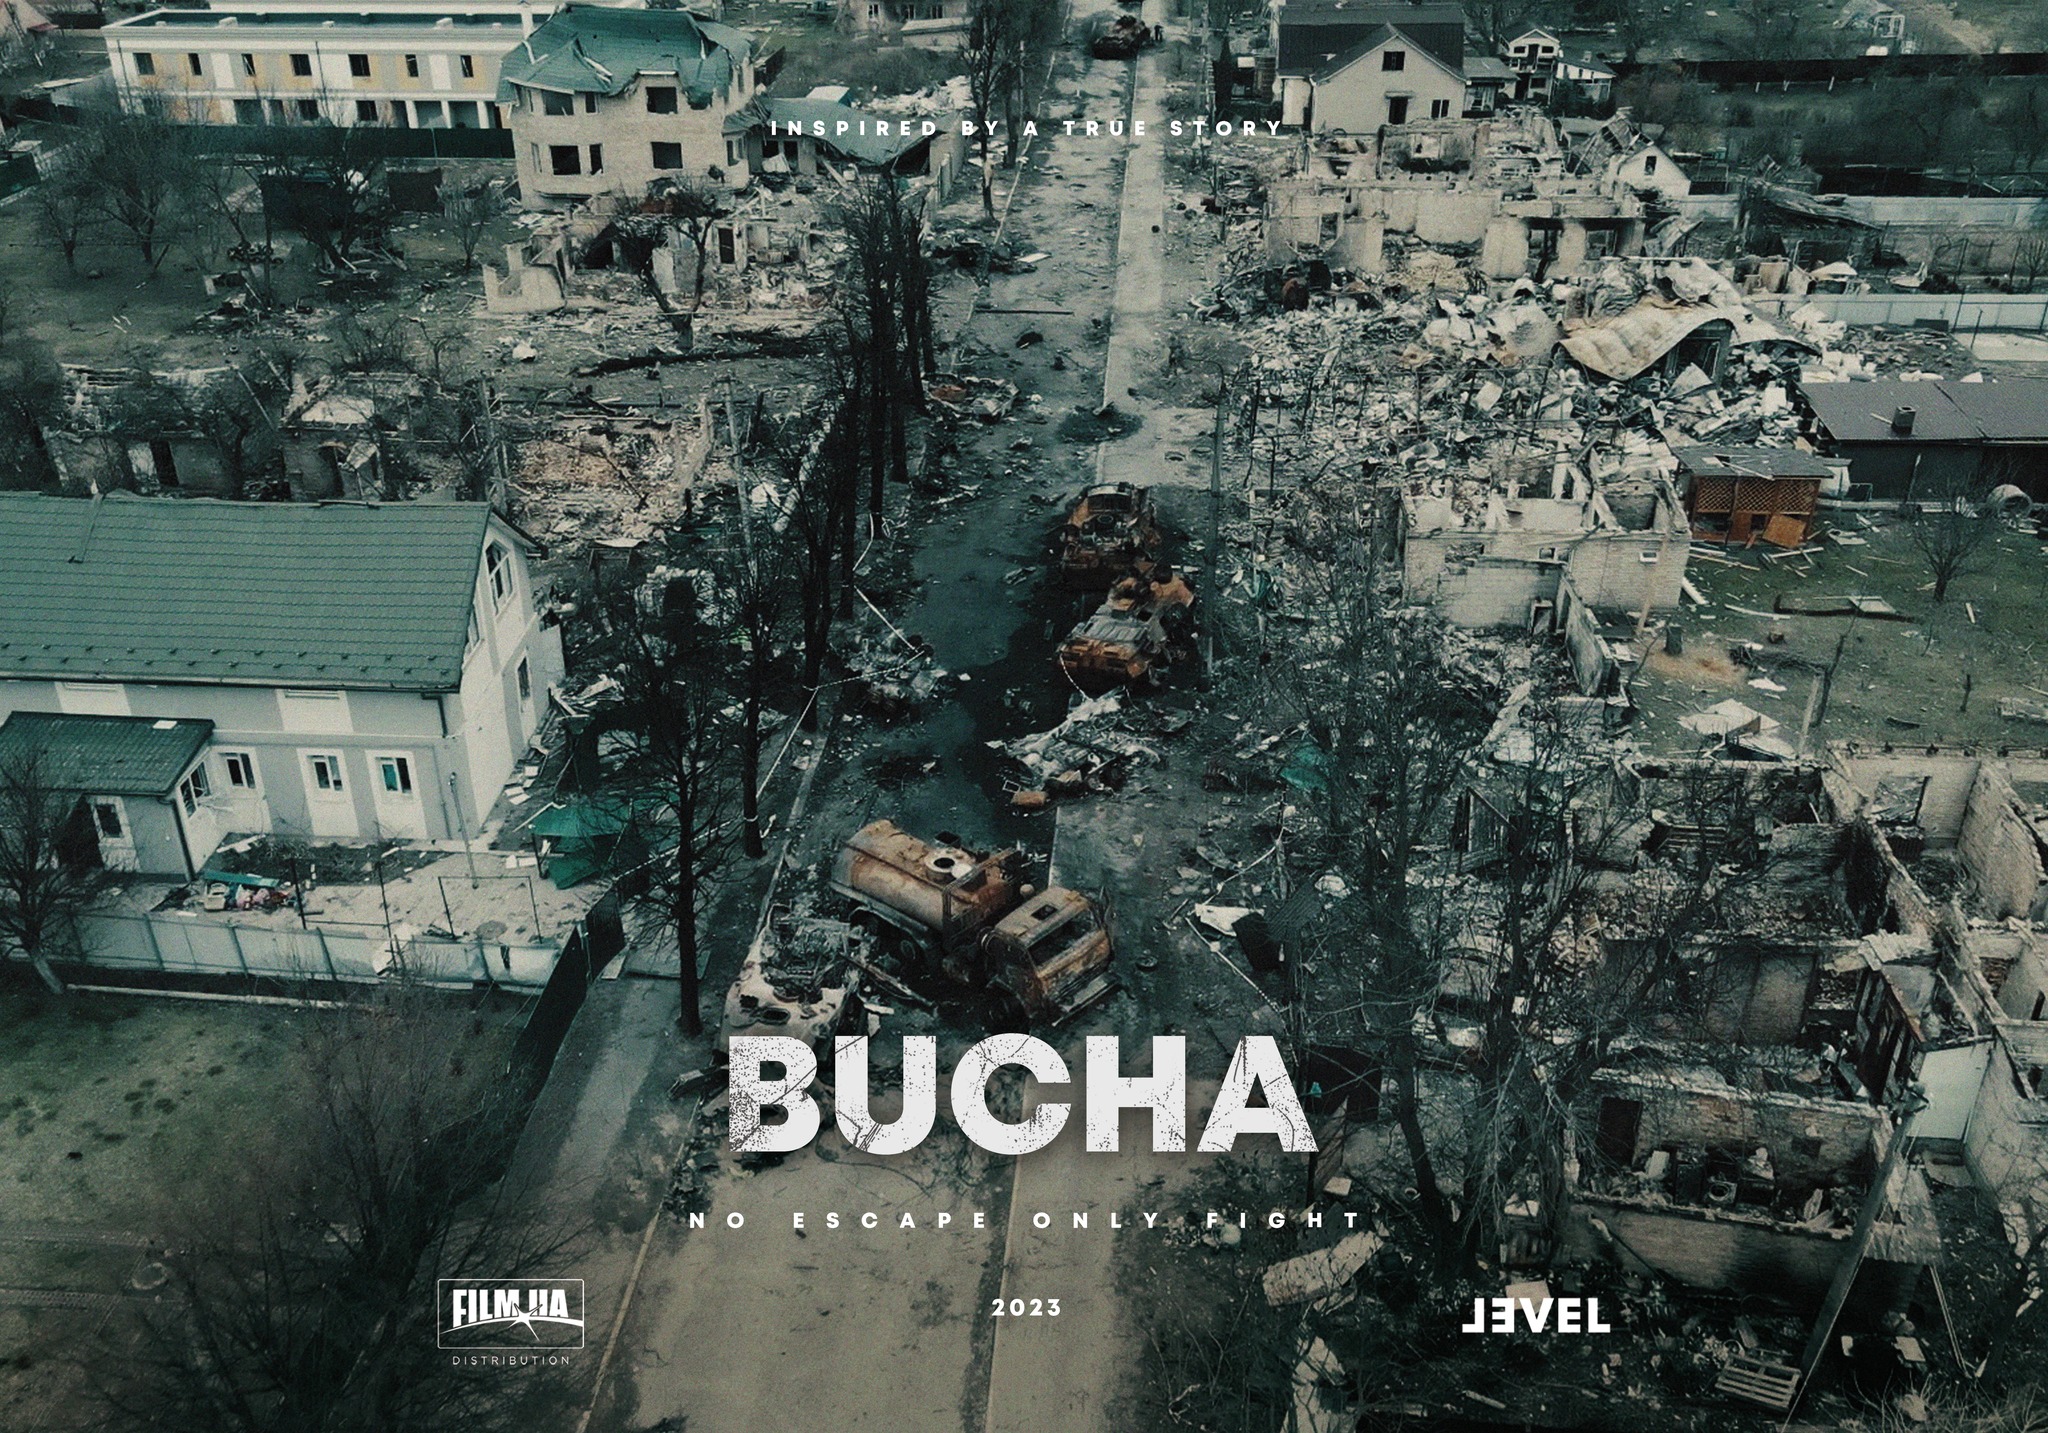 BUCHA - a film based on a true story. Trailer Screening + Q&A